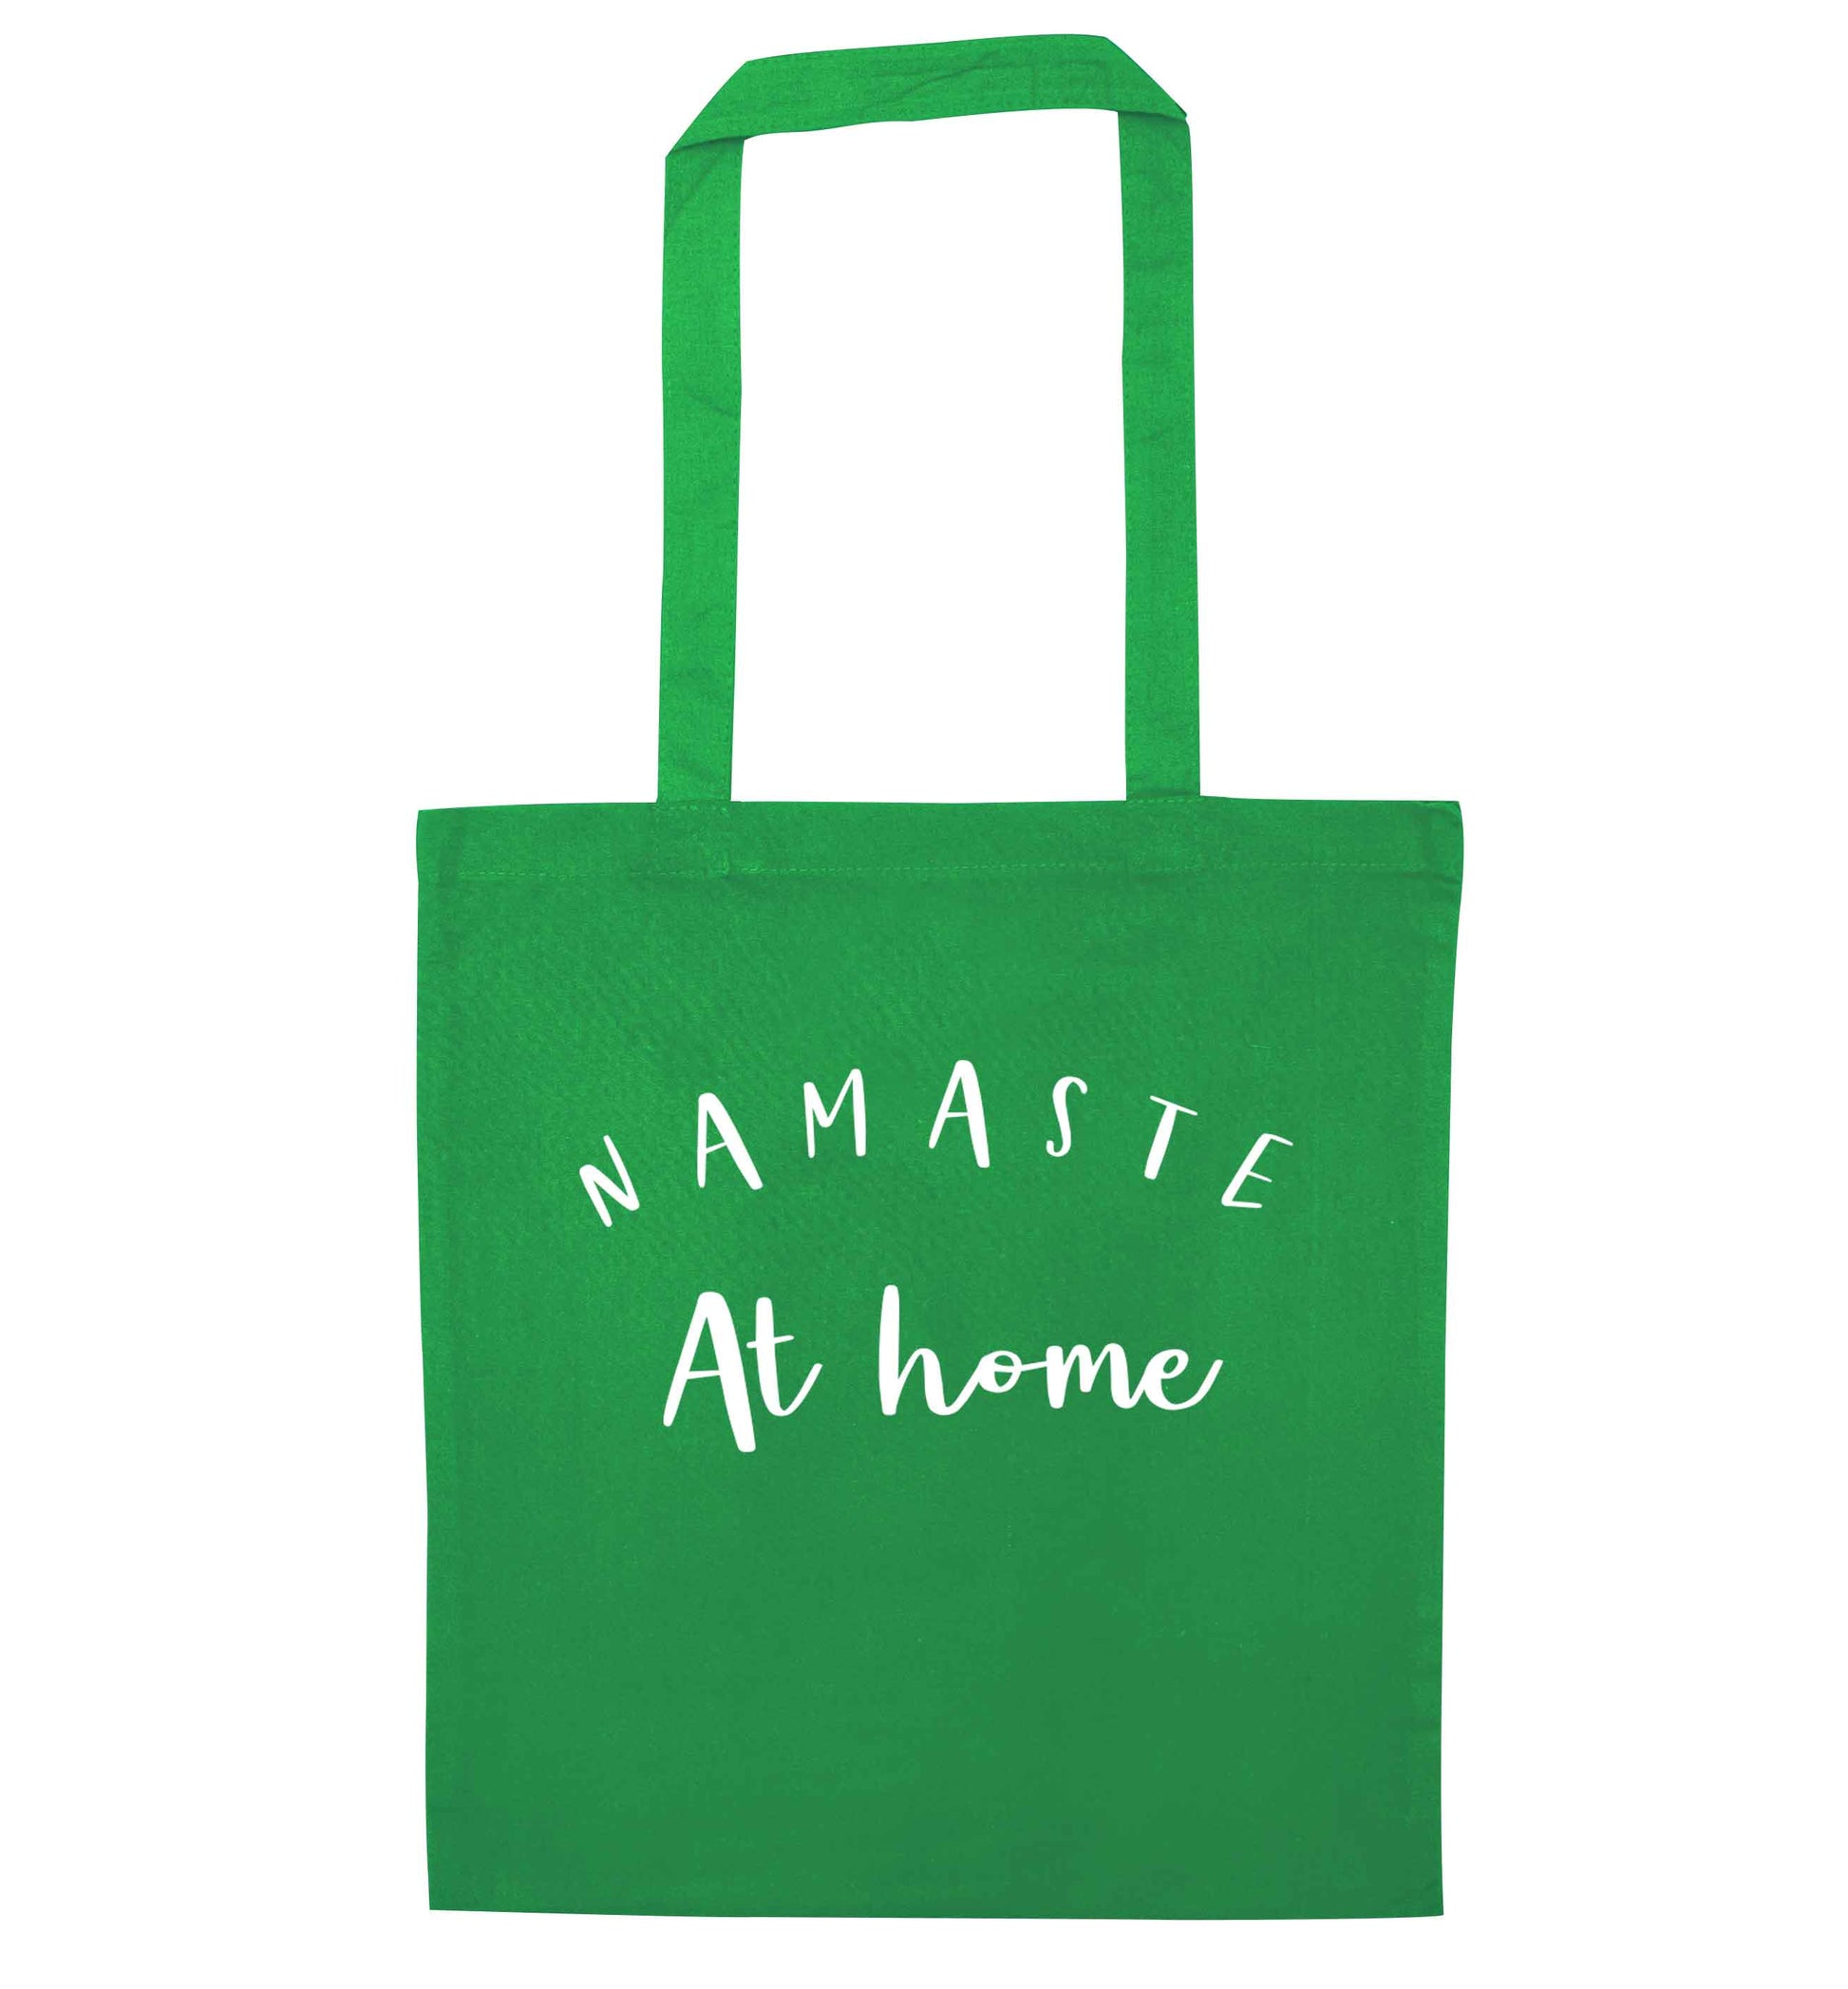 Namaste at home green tote bag